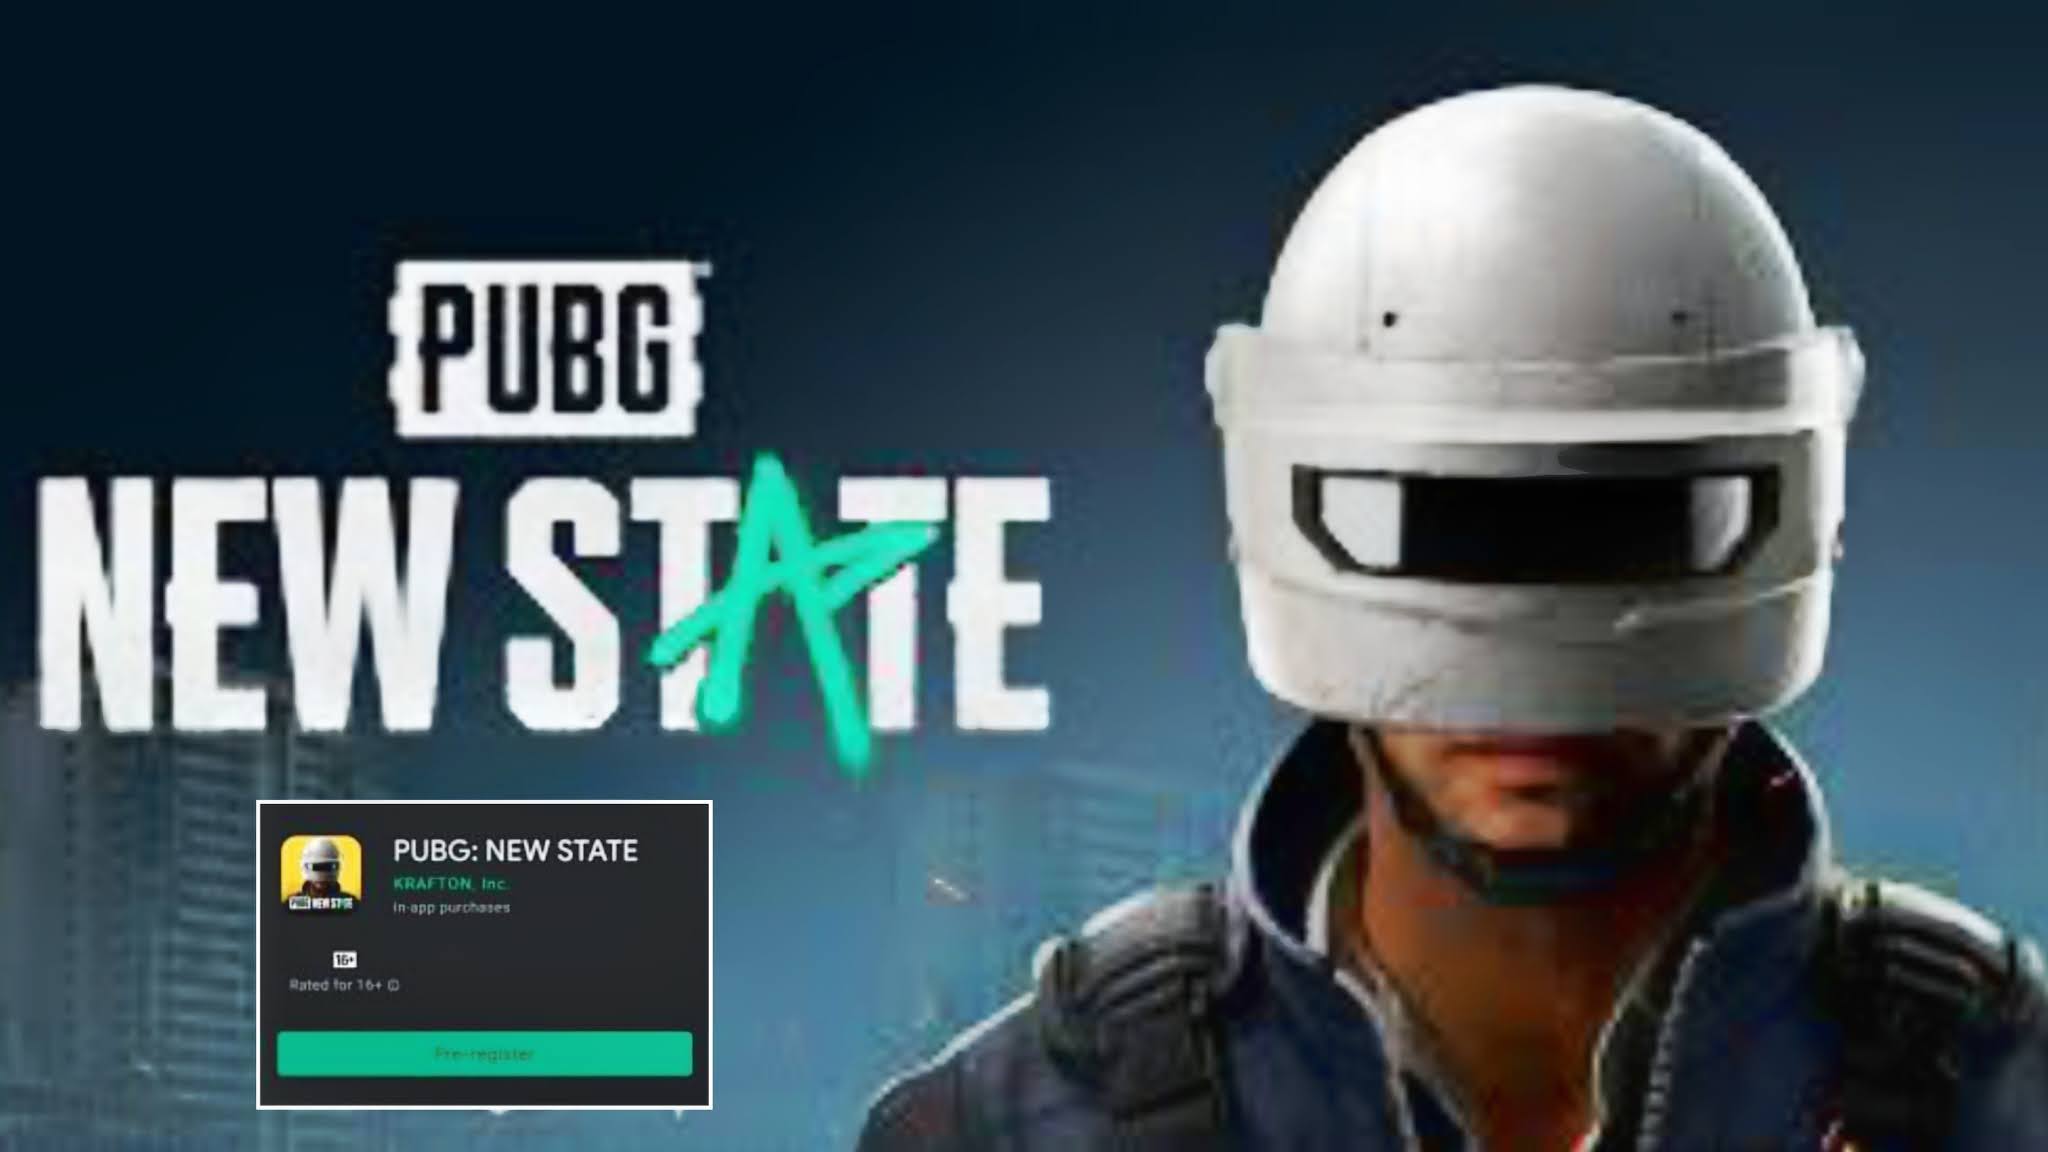 رسميا: PUBG: NEW STAT إصدار الجديد من لعبة بابجي موبايل